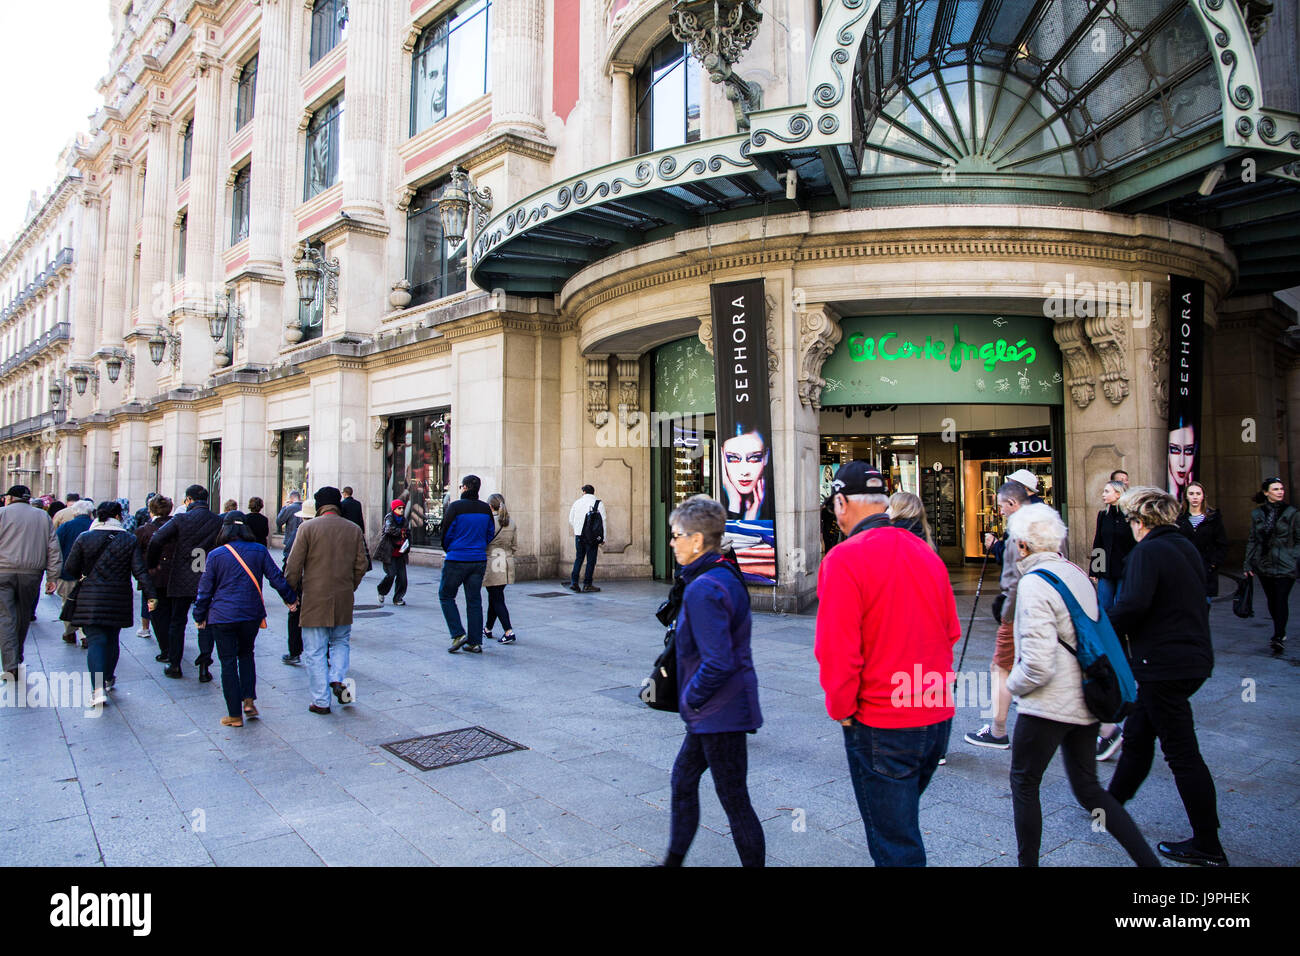 Portal de l'Angel est une rue commerçante piétonne populaire/dans le district de Ciutat Vella de Barcelone. L'Espagne. Banque D'Images